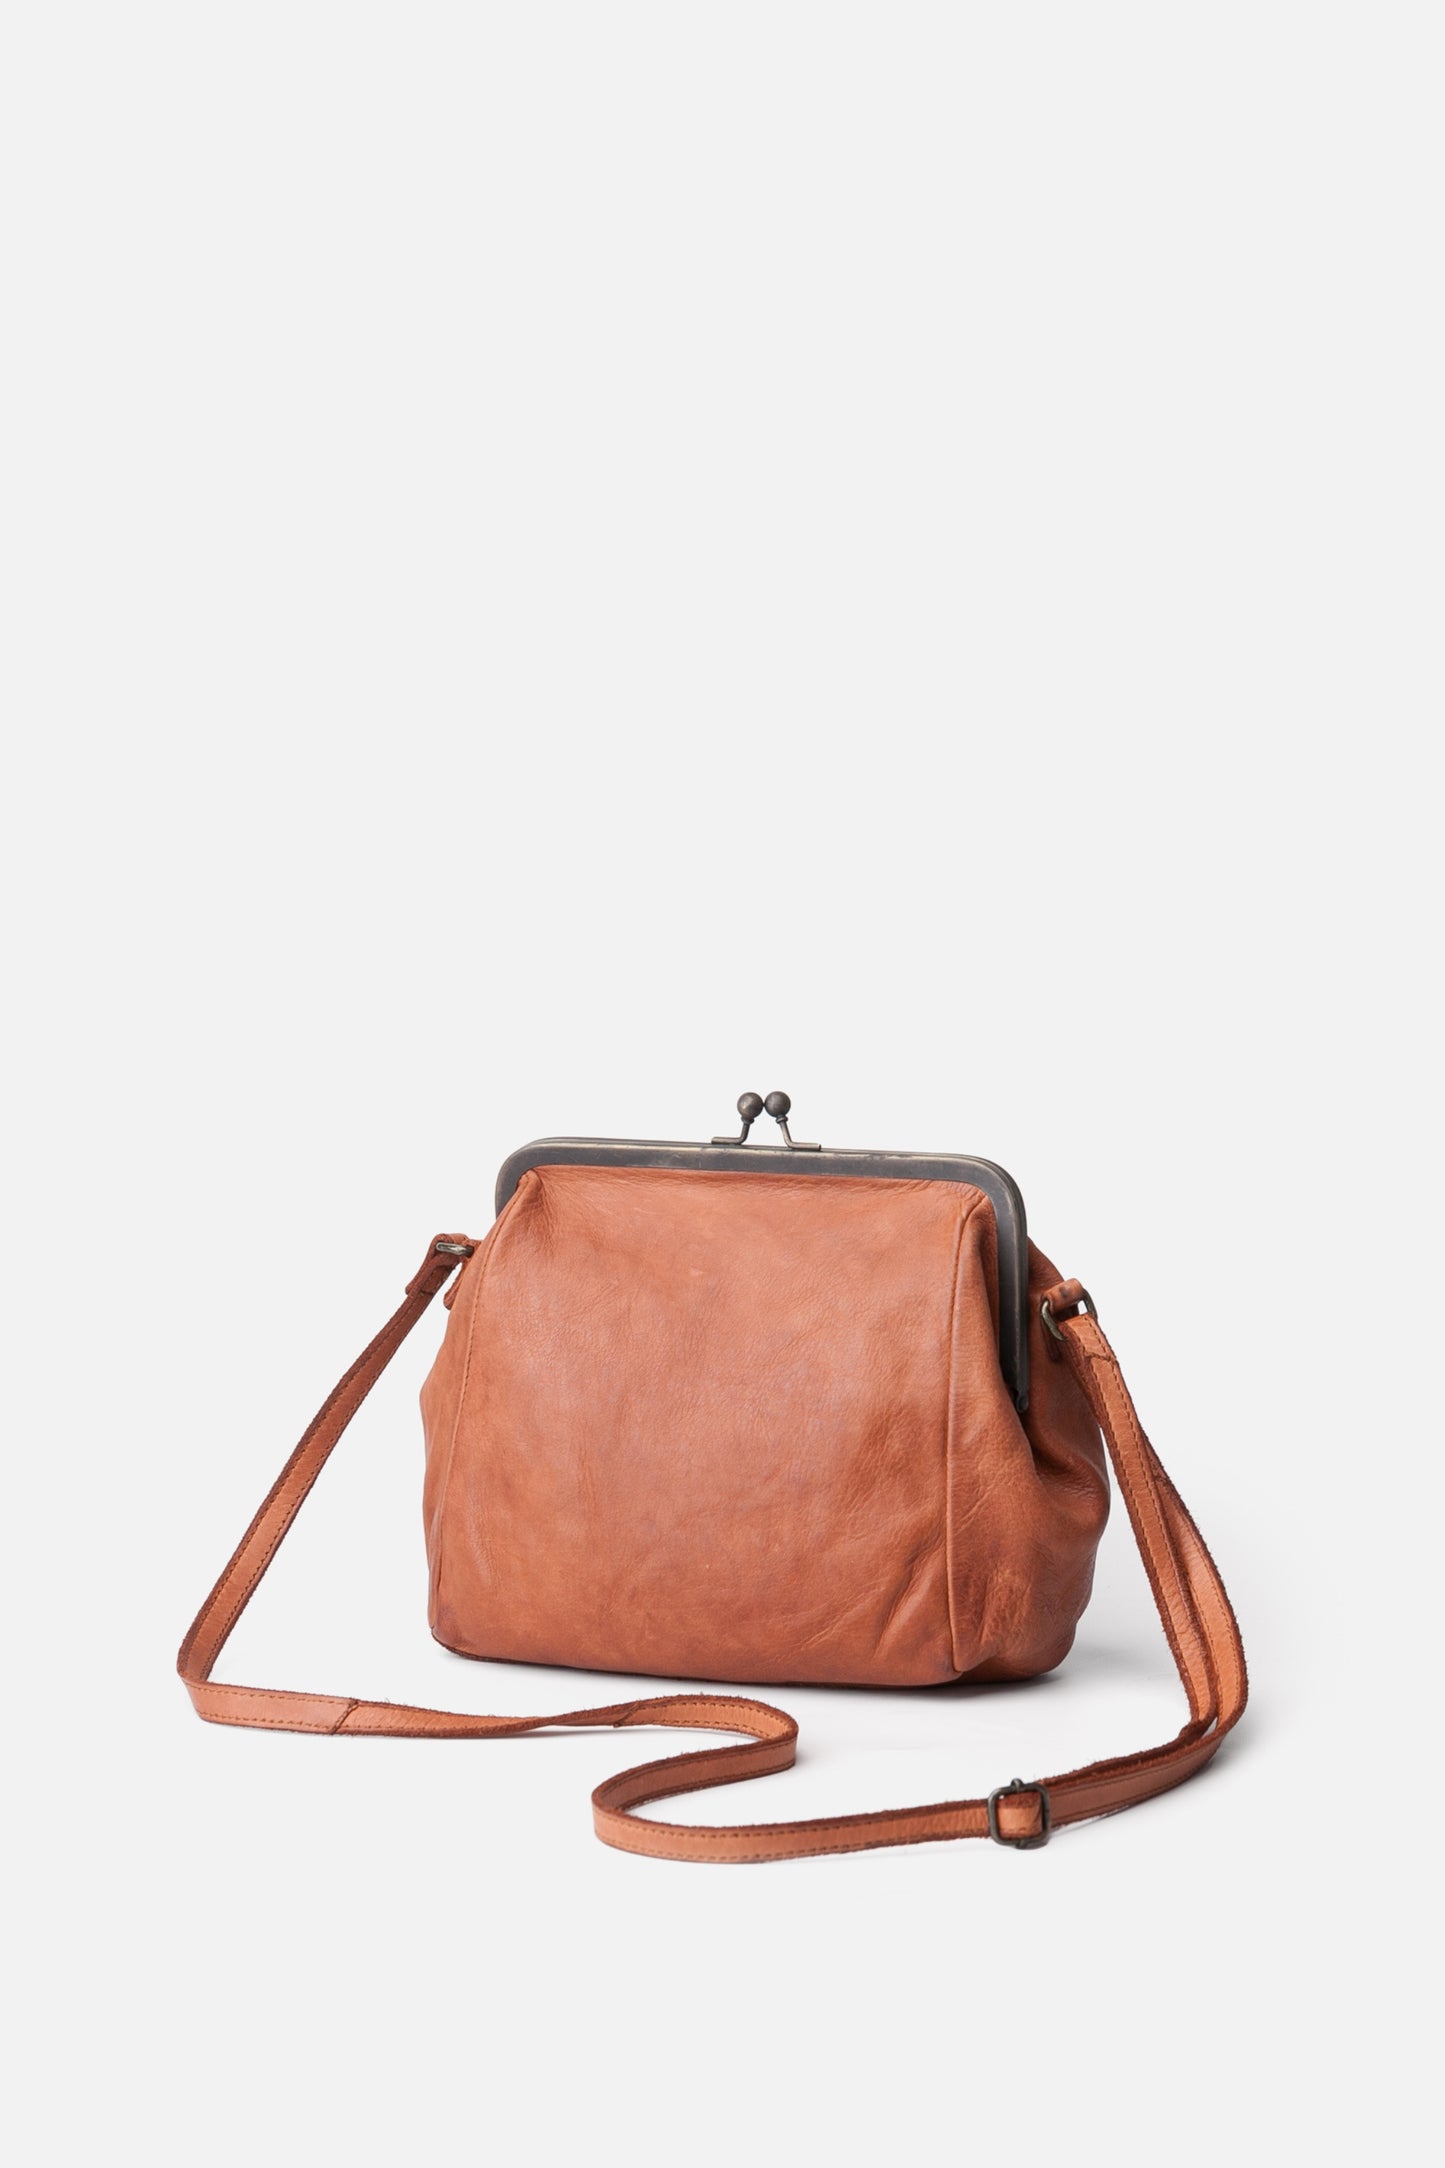 KANSAS - Braided Clasp Bag